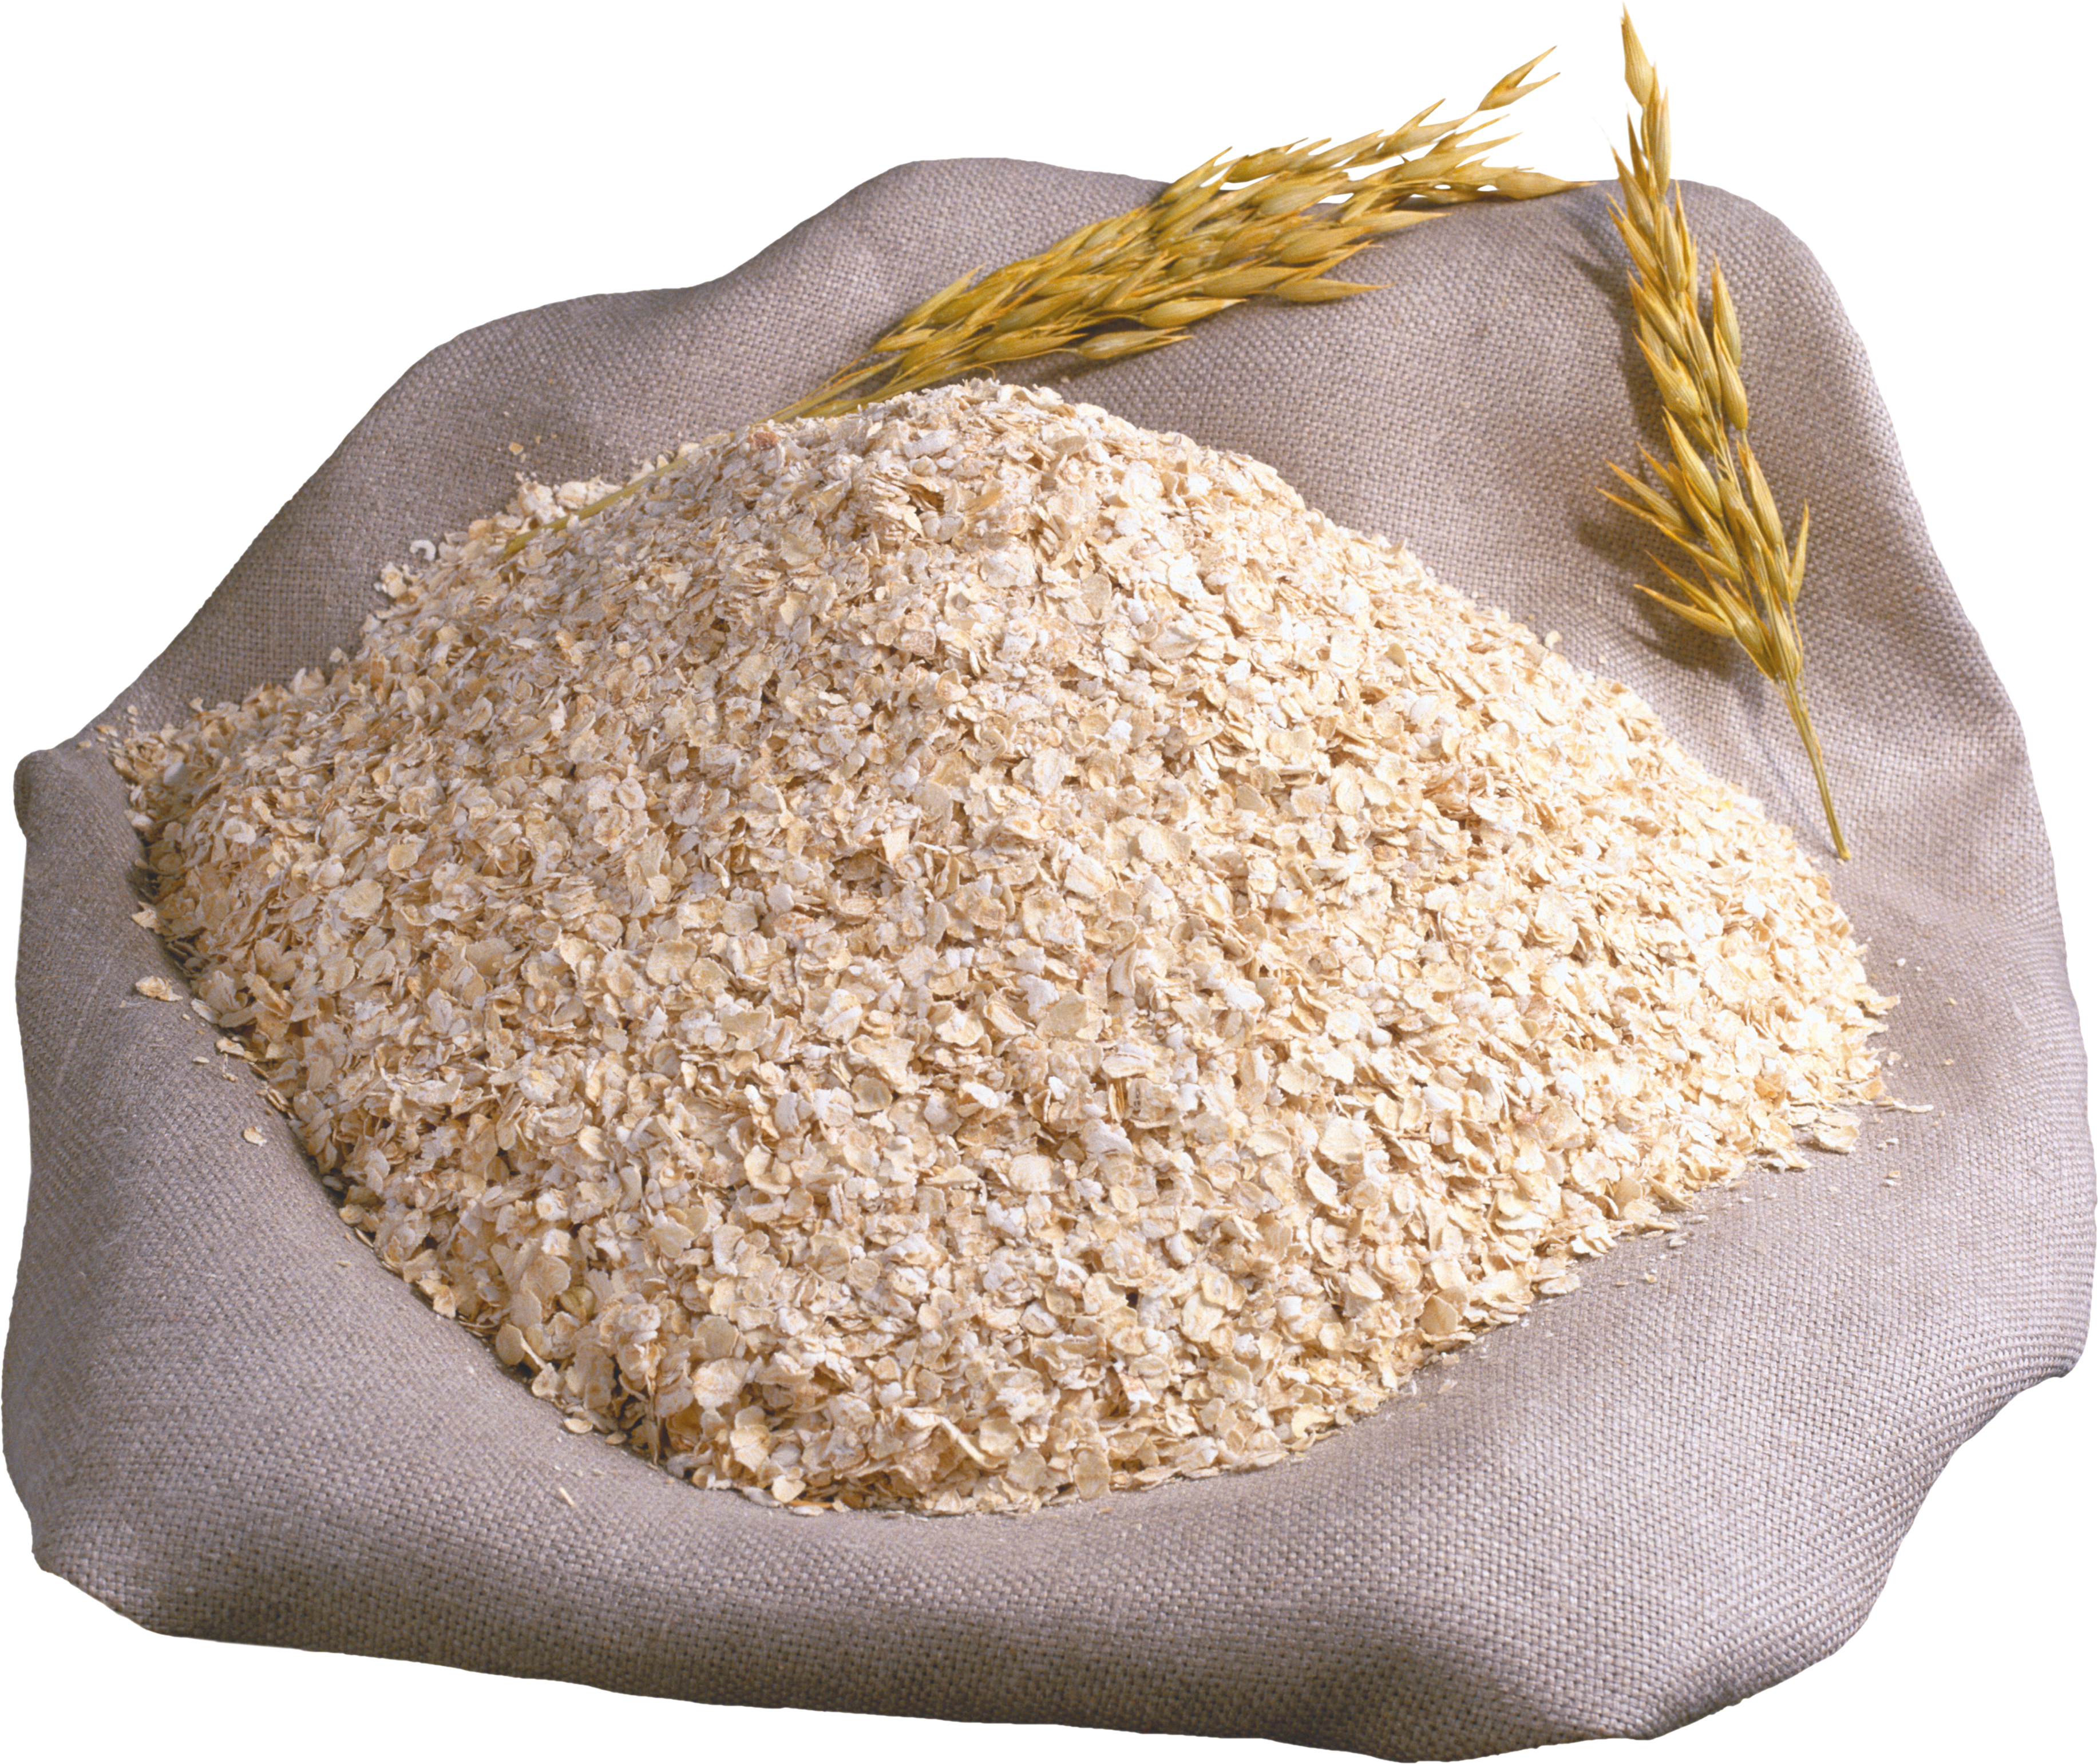 Отруби пшеничные, мешок (25 кг). Крупа пшеничная мешок 50кг АГРОСА. Отруби, крупа пшеничная. Мешки с крупой. Отруби пшеничные оптом